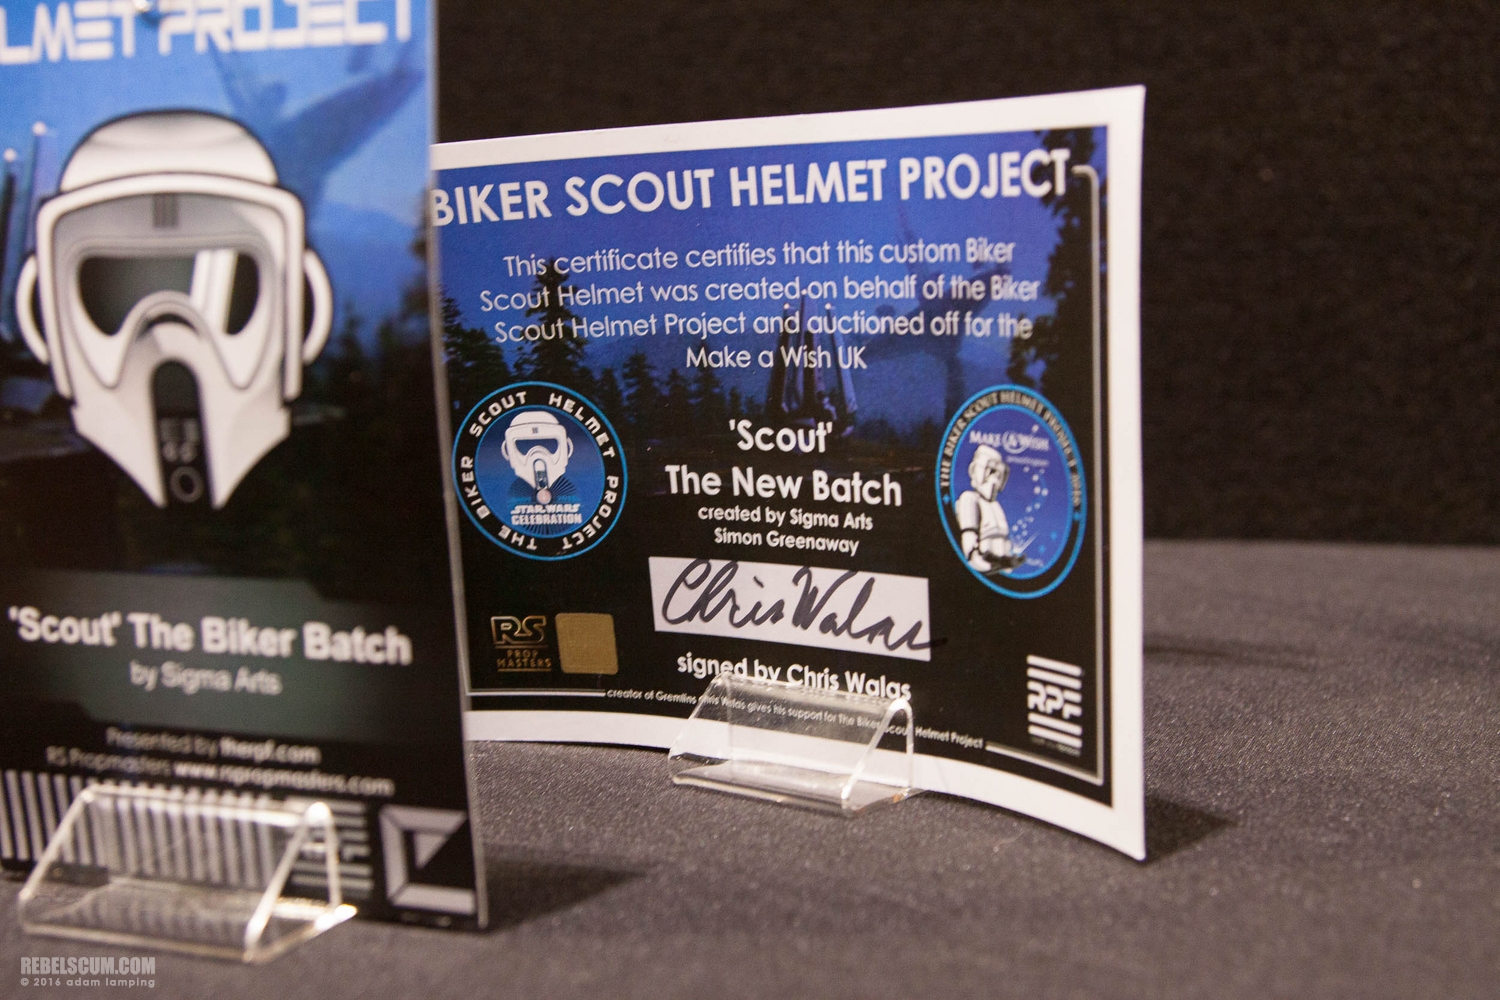 star-wars-celebration-2016-biker-scout-helmet-project-095.jpg